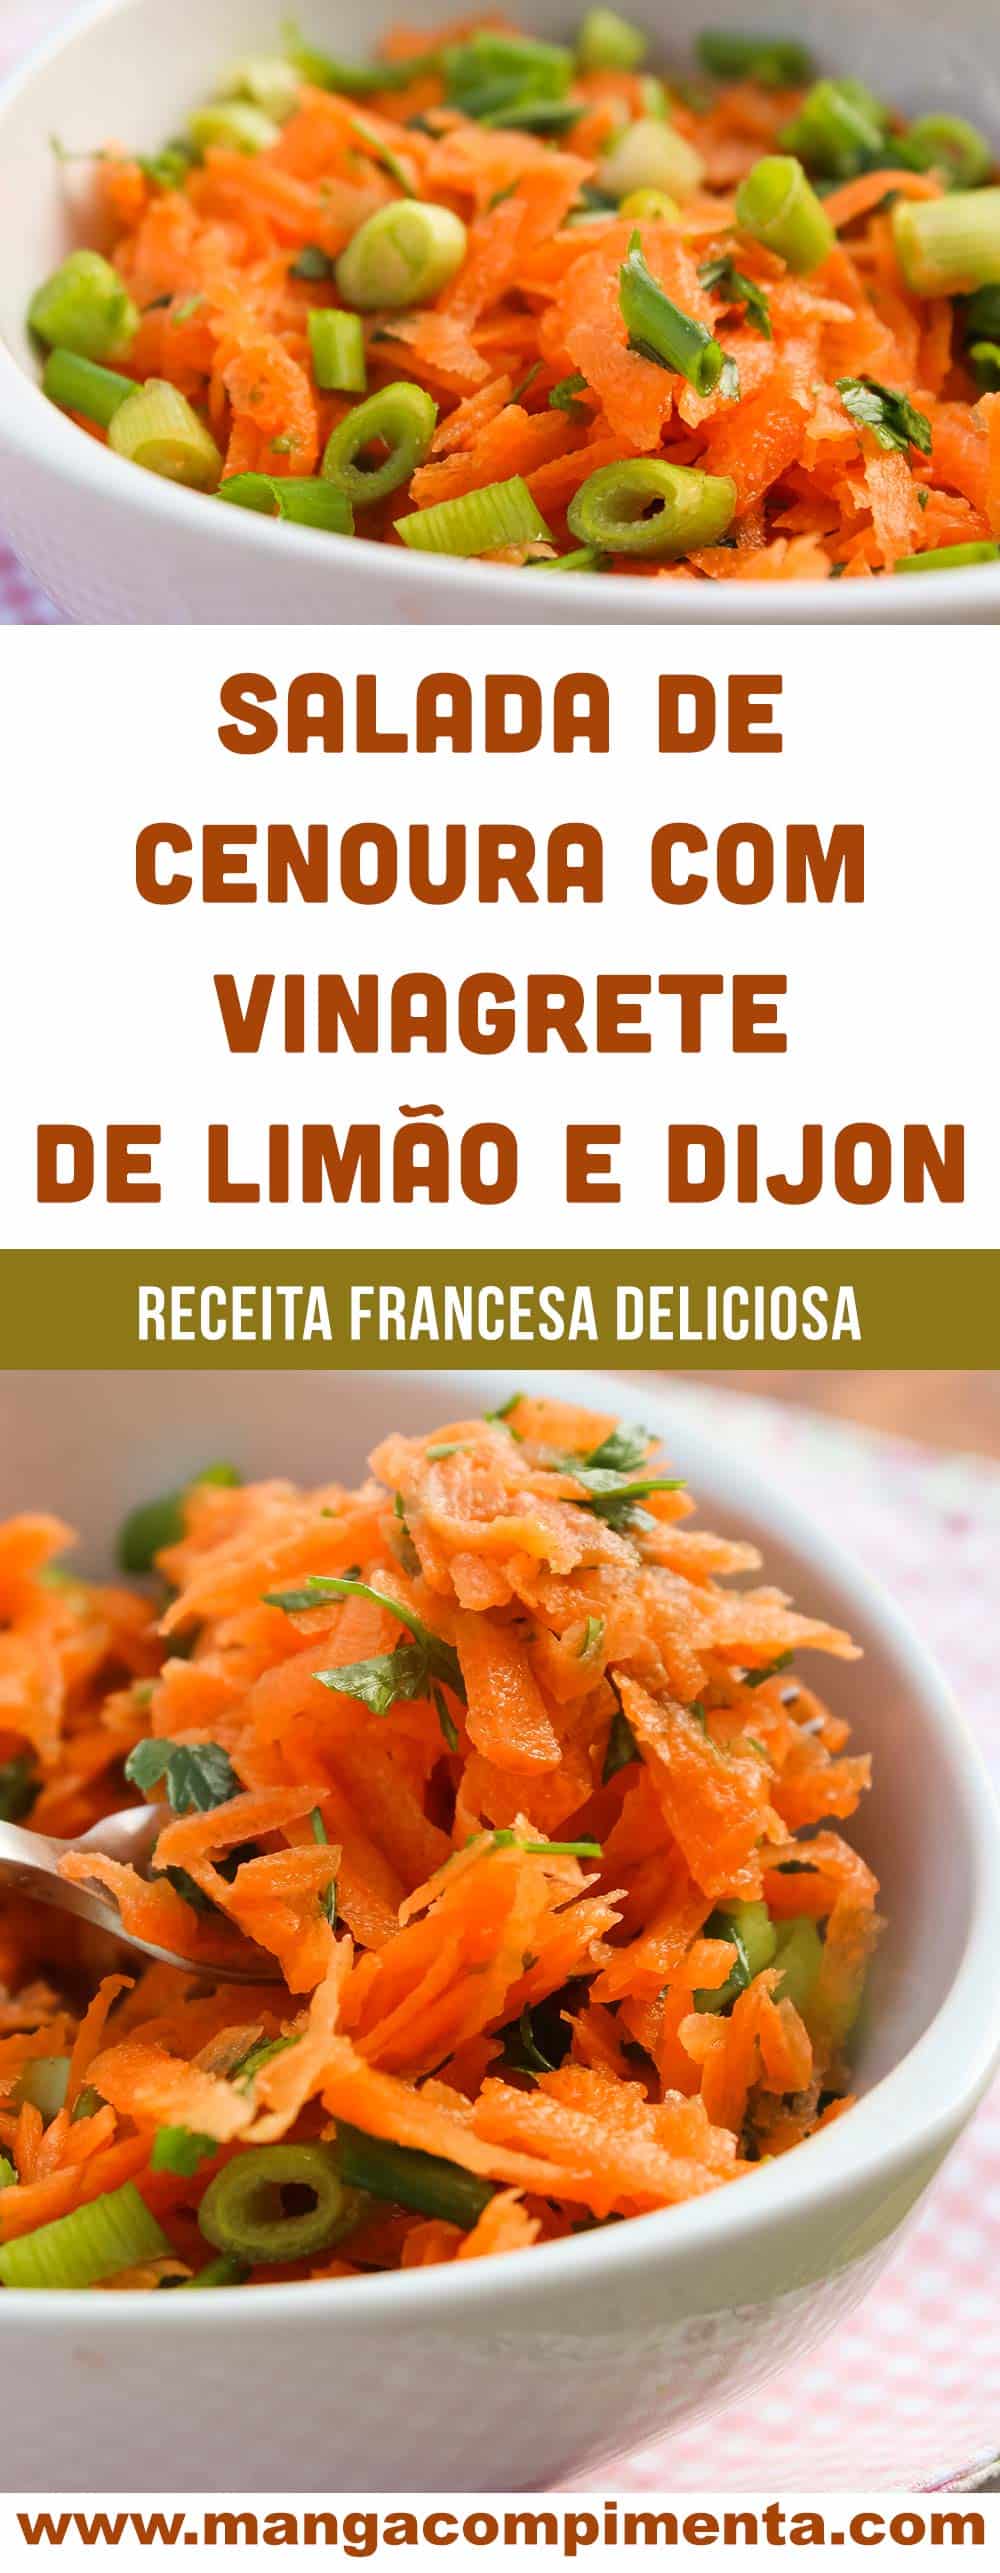 Salada de Cenoura com Vinagrete de Limão e Dijon - um prato delicioso francês para o seu almoço.